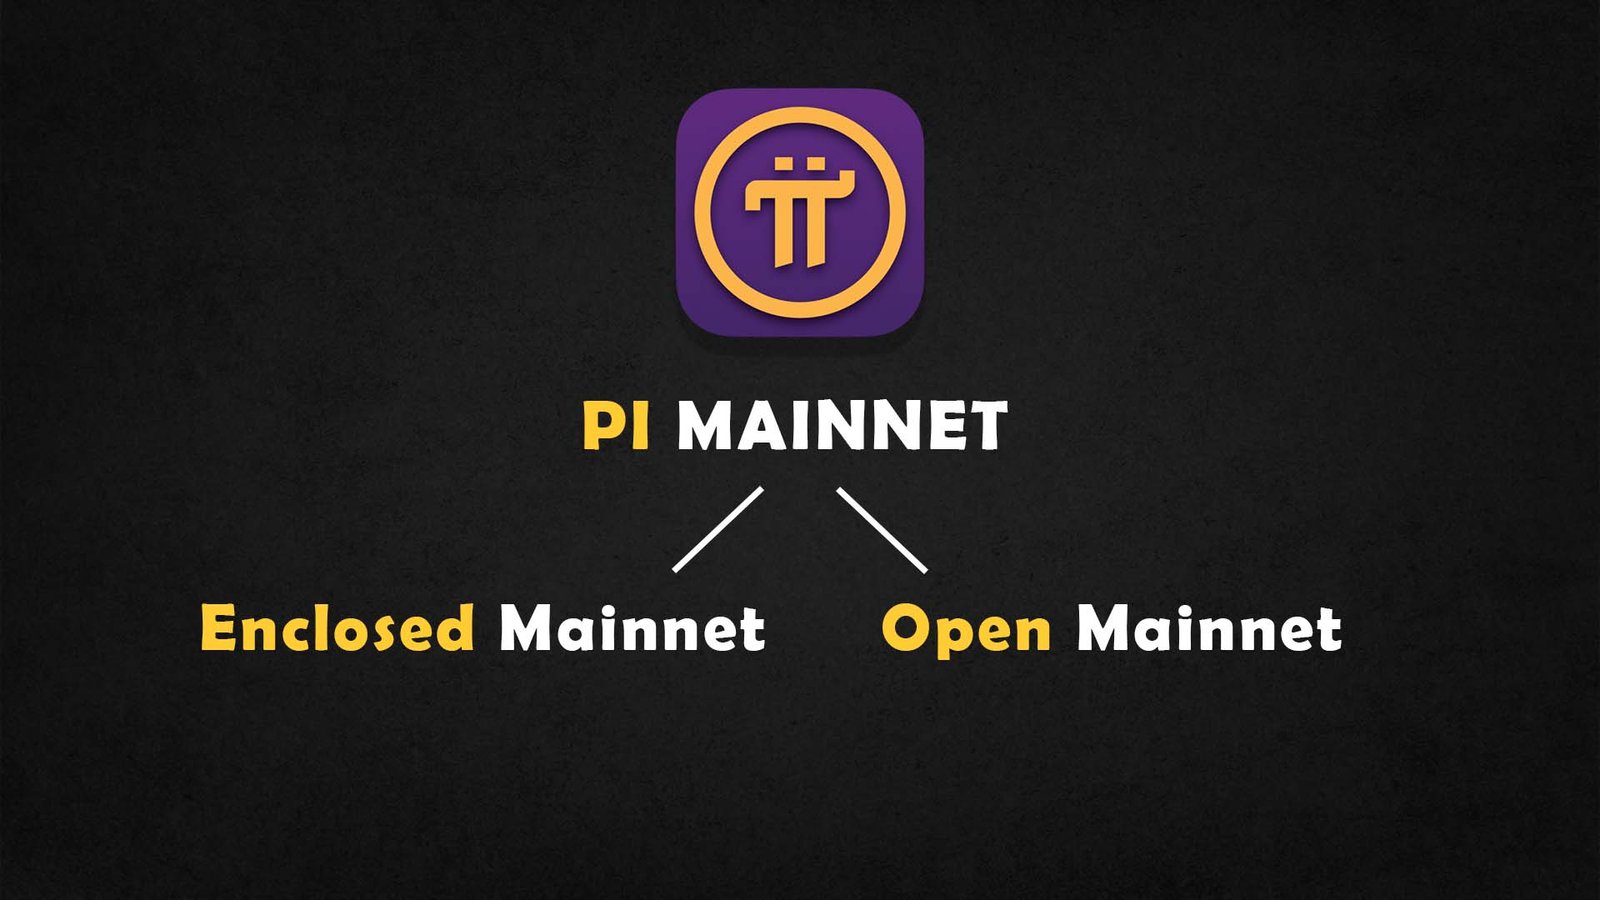 Pi Network Mainnet